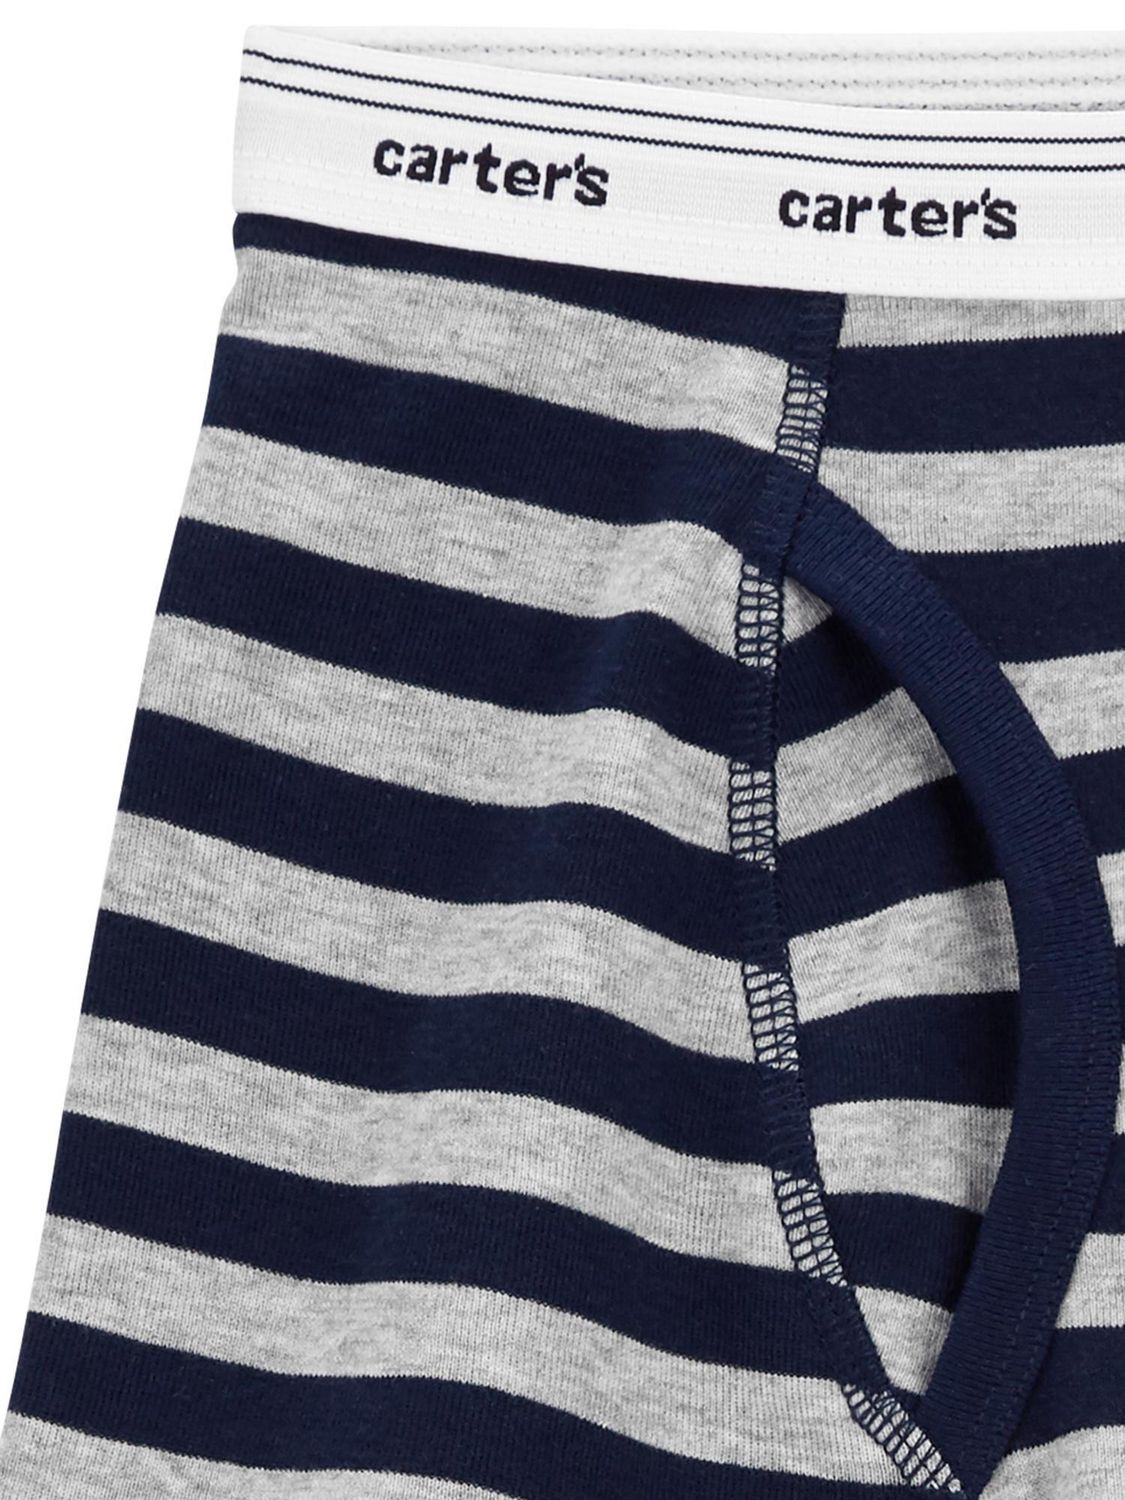  Carter's Toddler Underwear